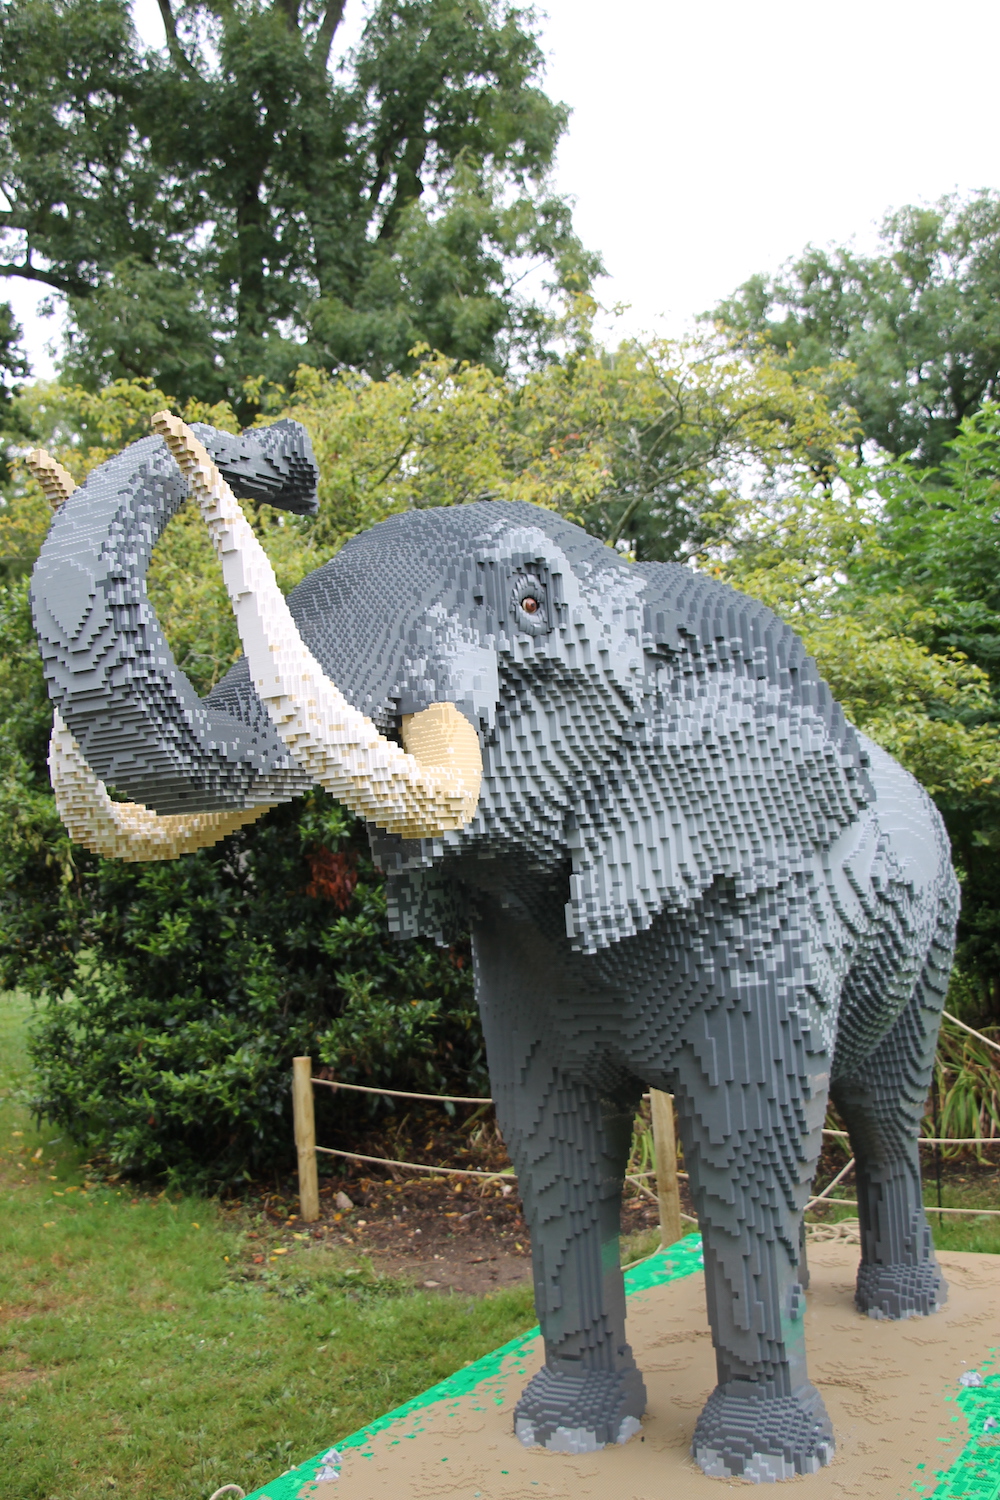 LEGO olifant